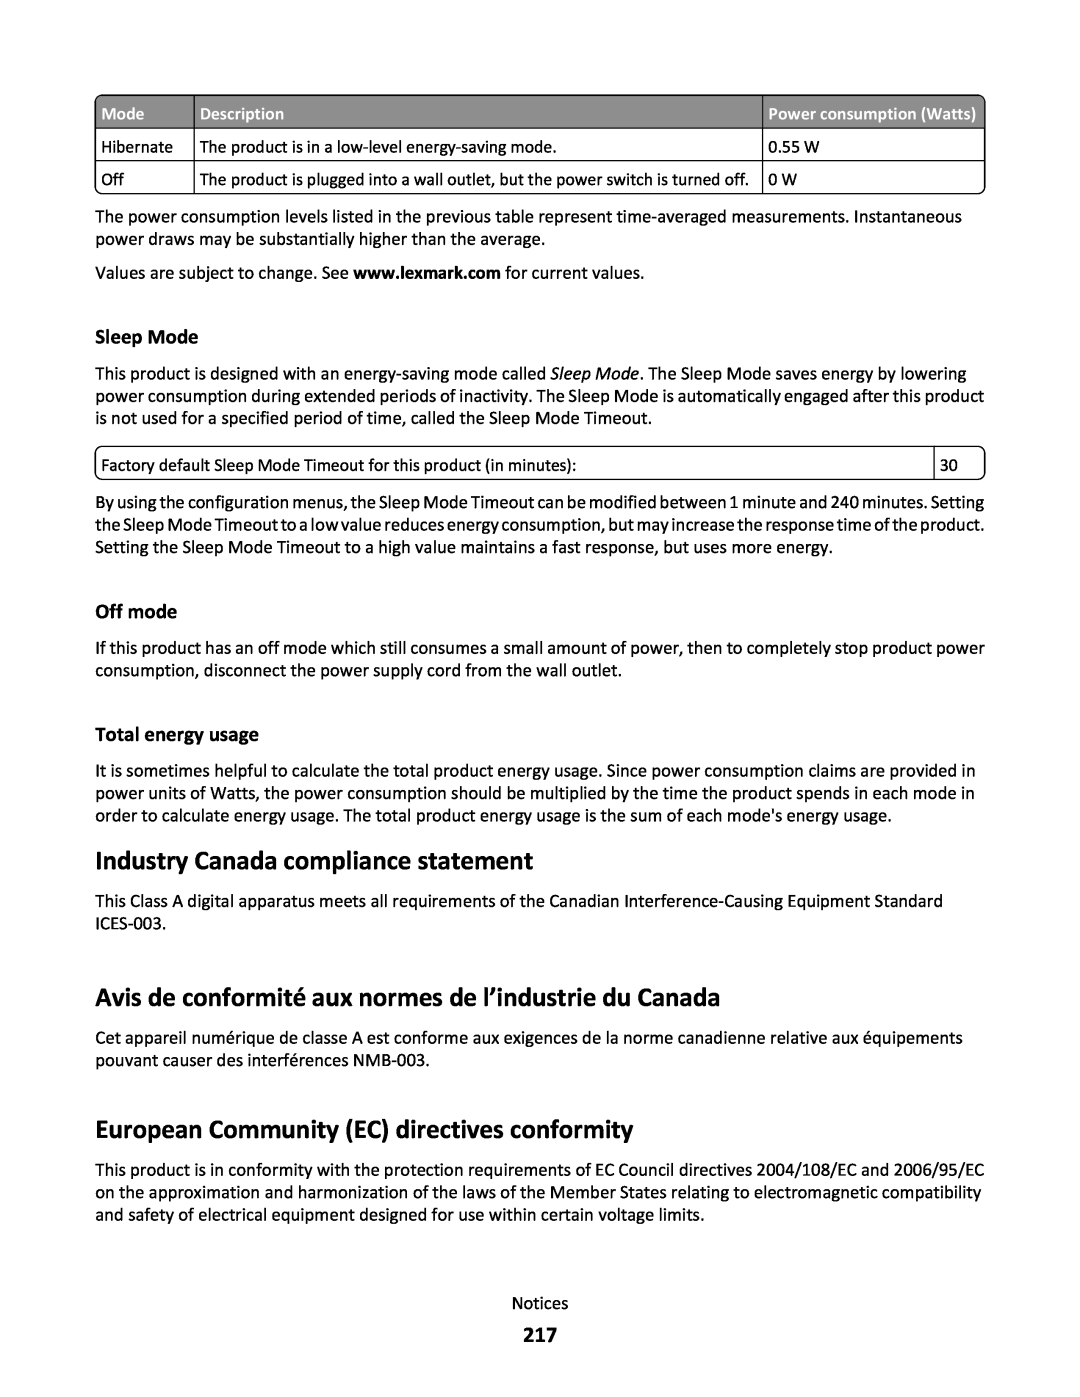 Lexmark C790 Industry Canada compliance statement, Avis de conformité aux normes de l’industrie du Canada, Sleep Mode 